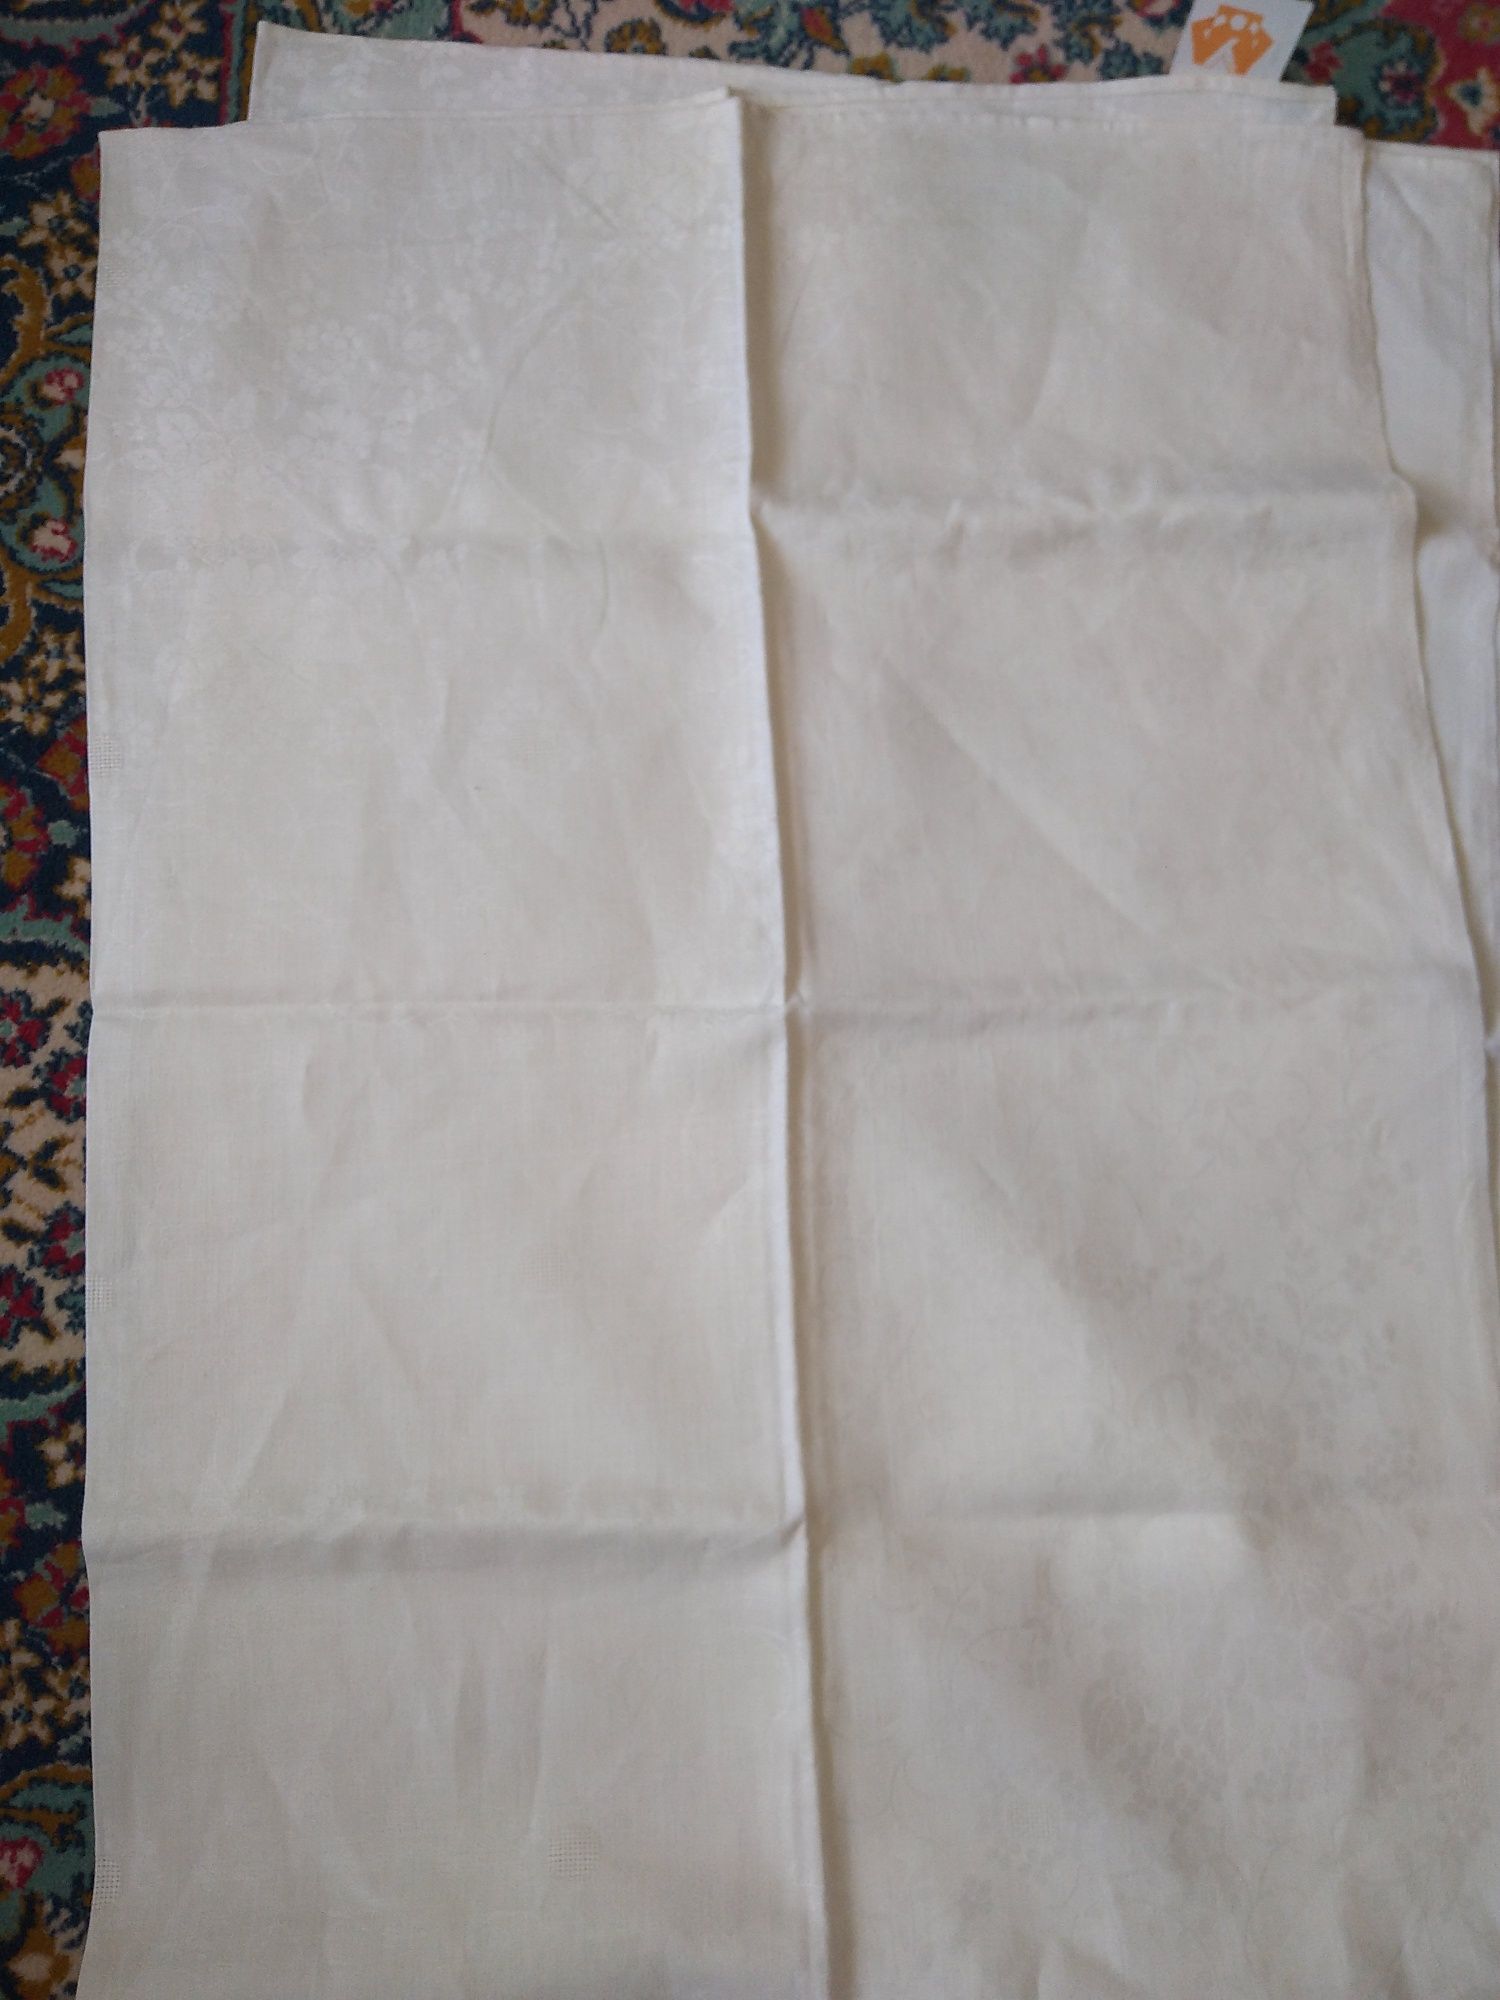 Скатертина біла лляна з серветкової тканини виробництва СРСР